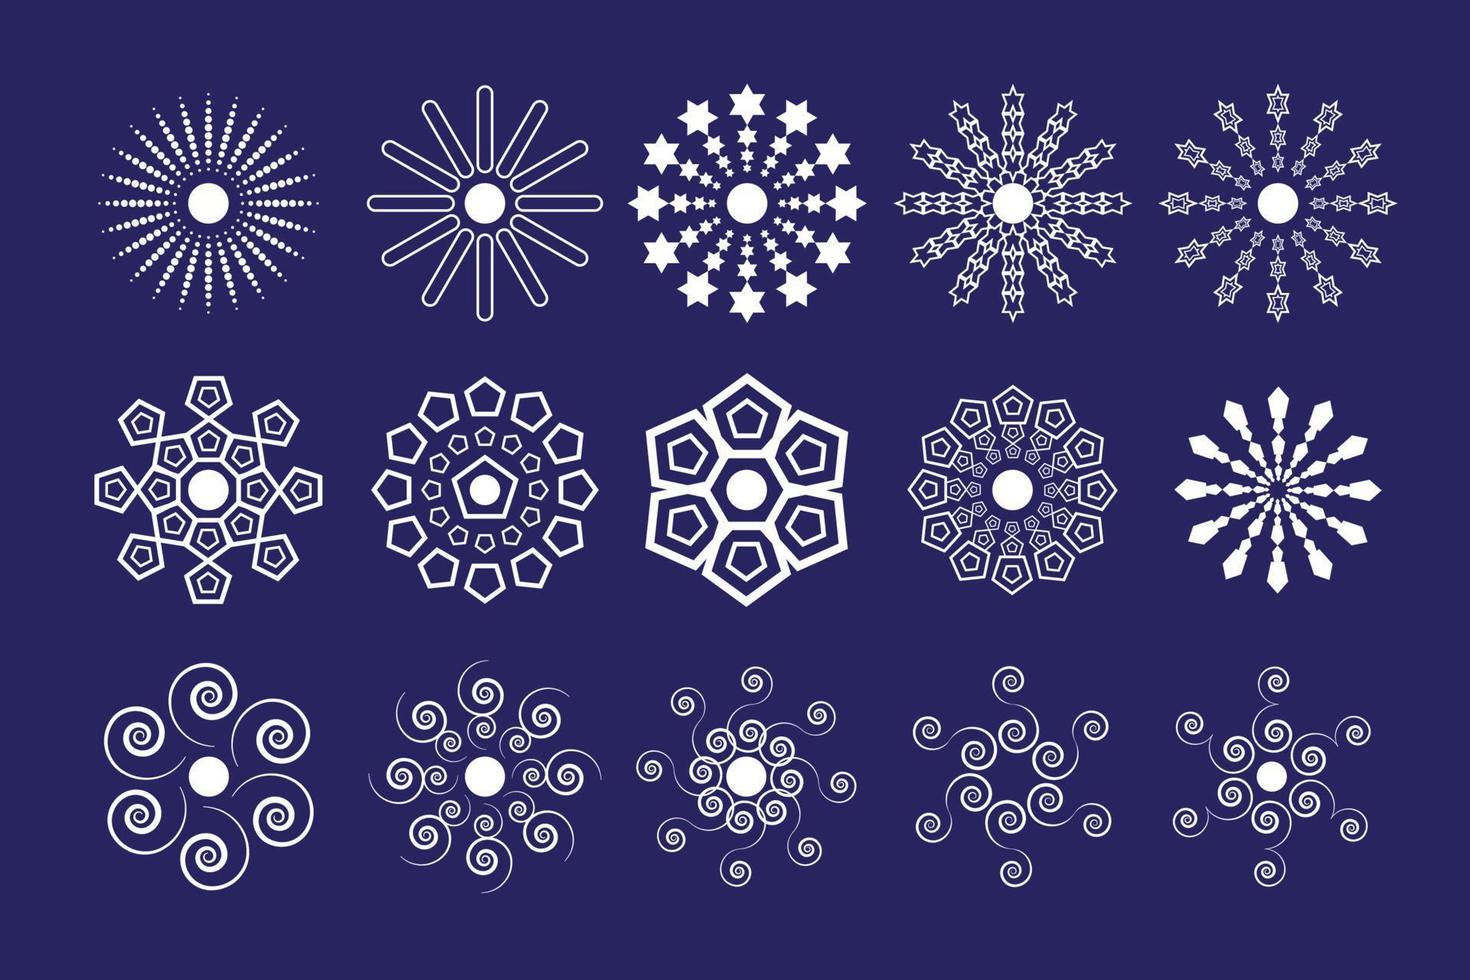 conjunto de ícones do logotipo da flor do sol 03 vetor